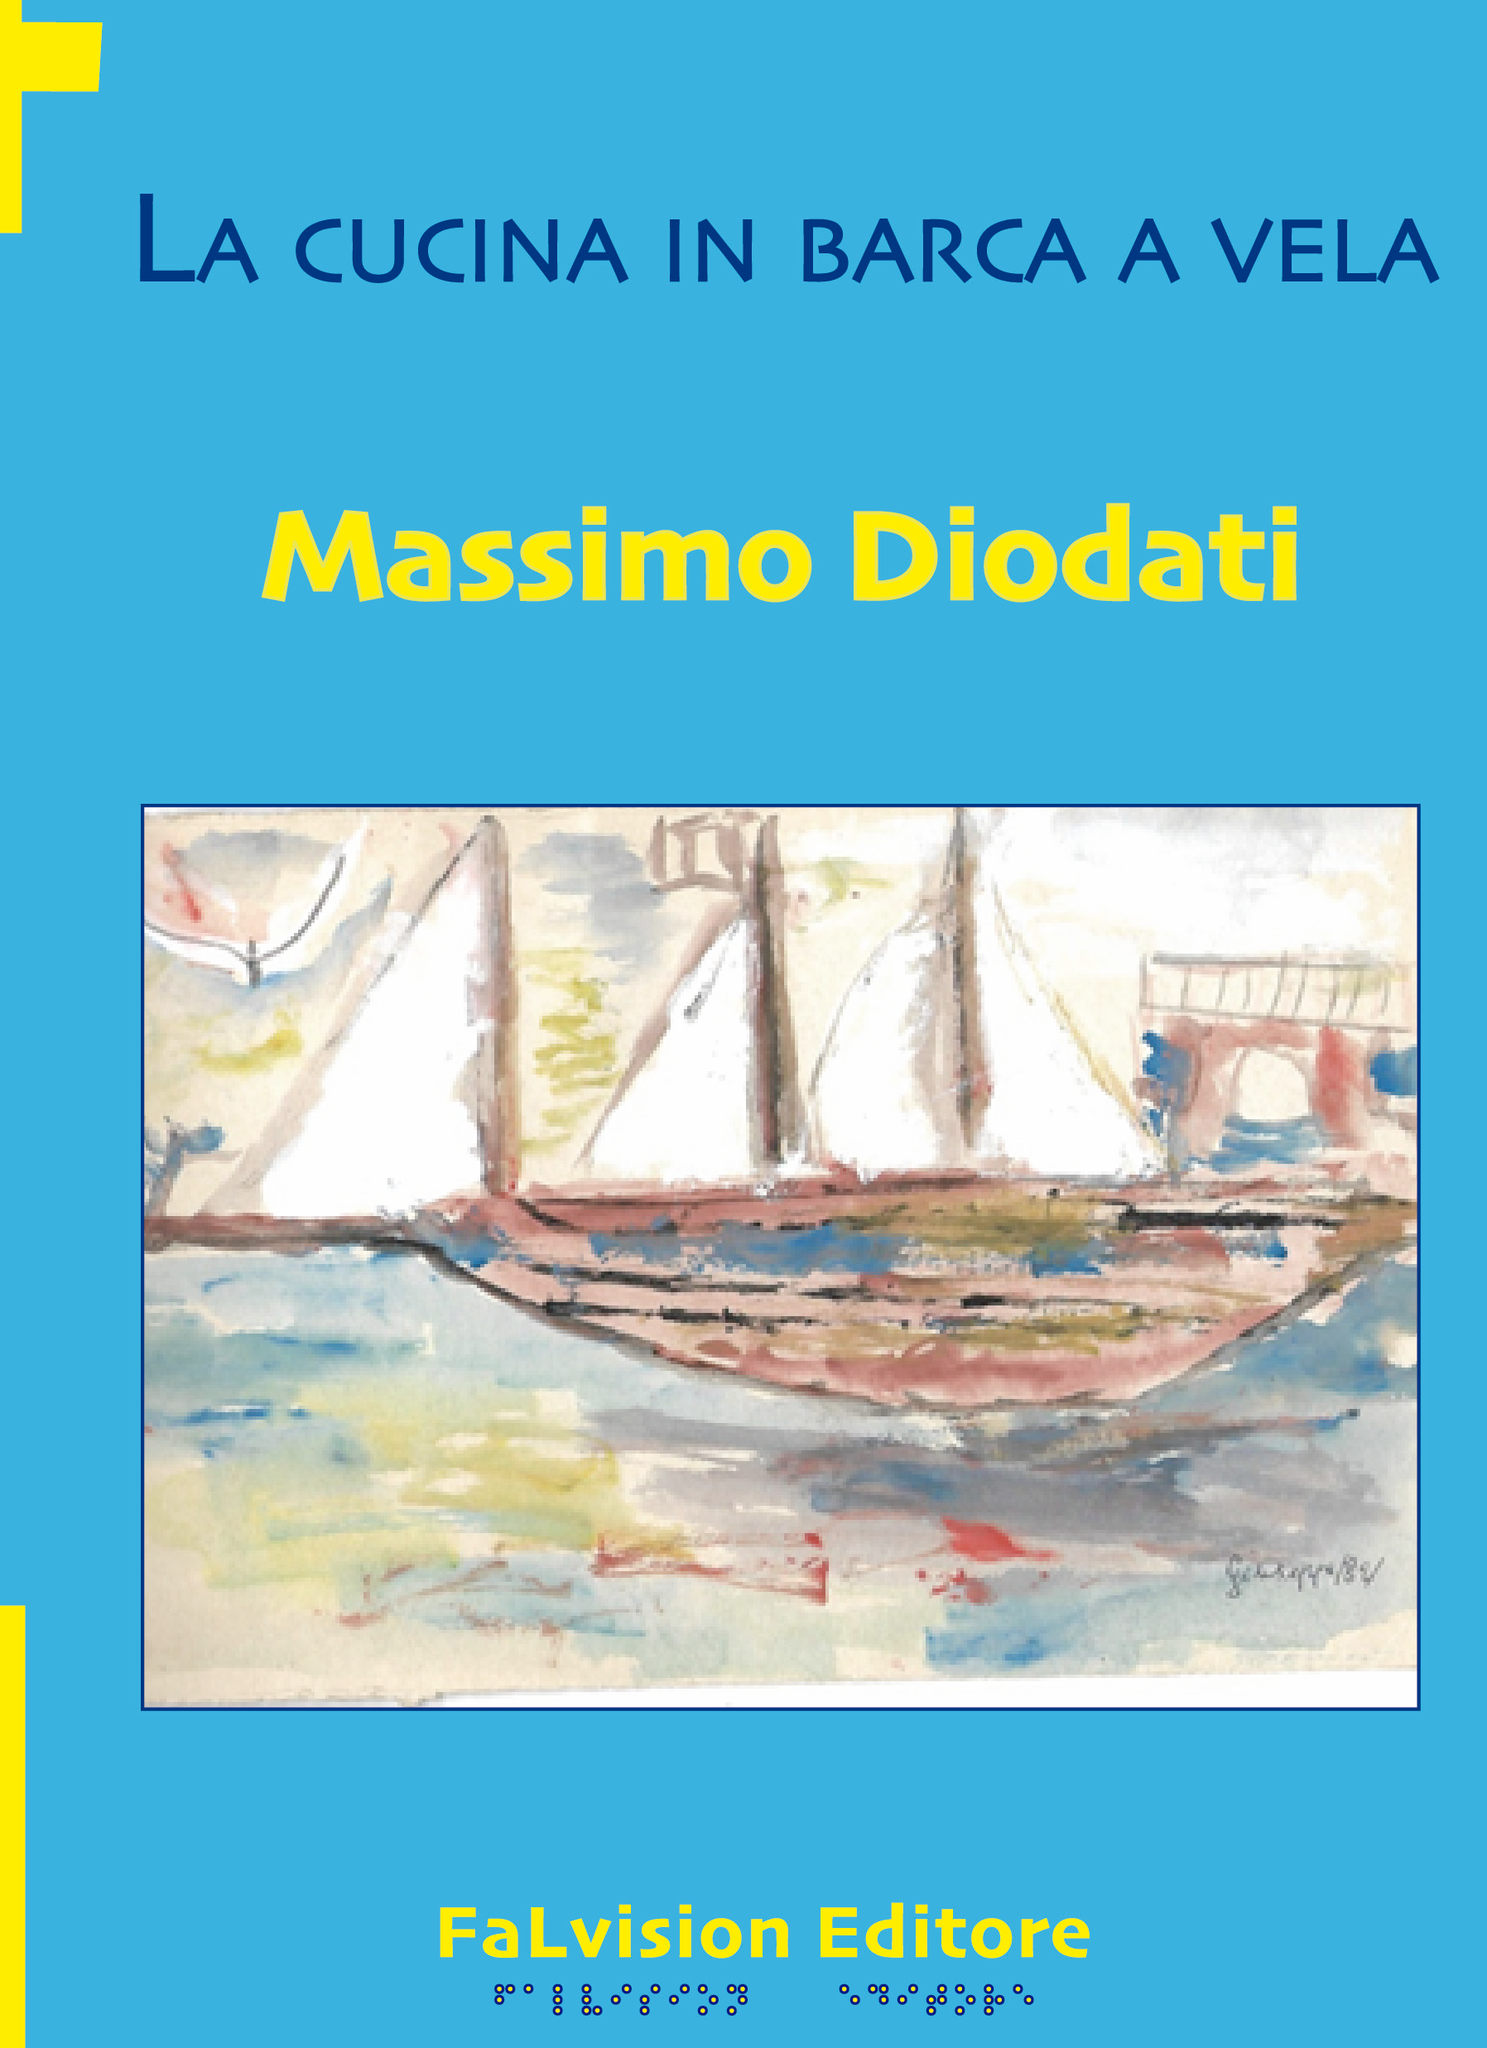 La cucina in barca a vela, Massimo Diodati